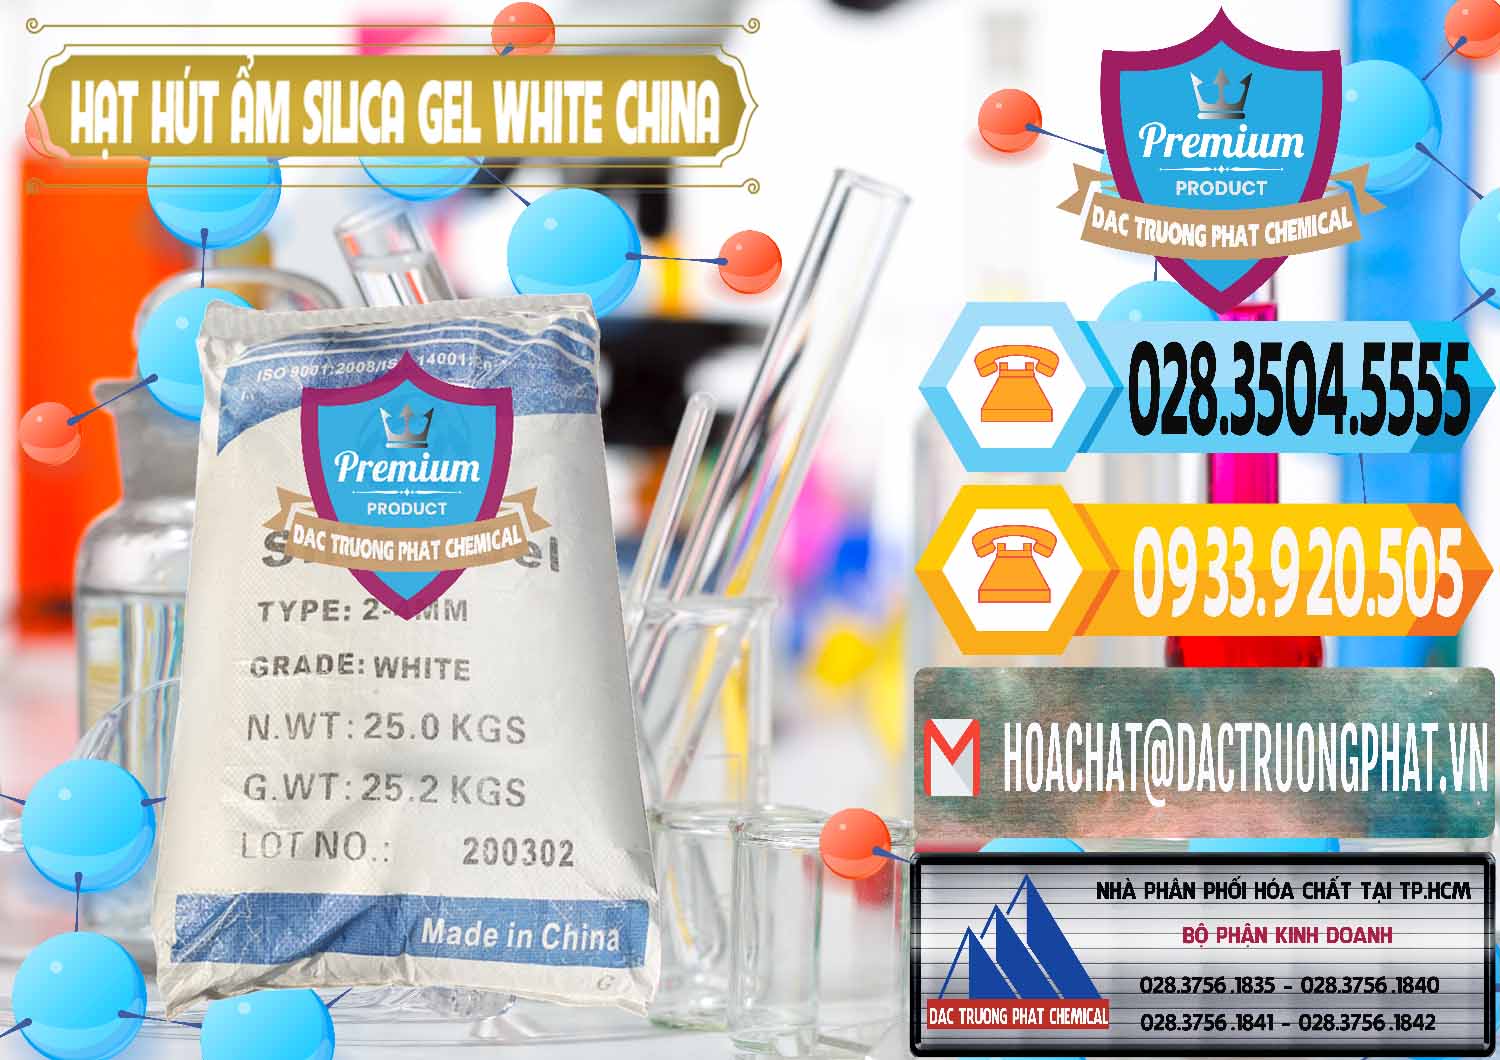 Cty chuyên cung cấp - bán Hạt Hút Ẩm Silica Gel White Trung Quốc China - 0297 - Đơn vị cung cấp & phân phối hóa chất tại TP.HCM - hoachattayrua.net